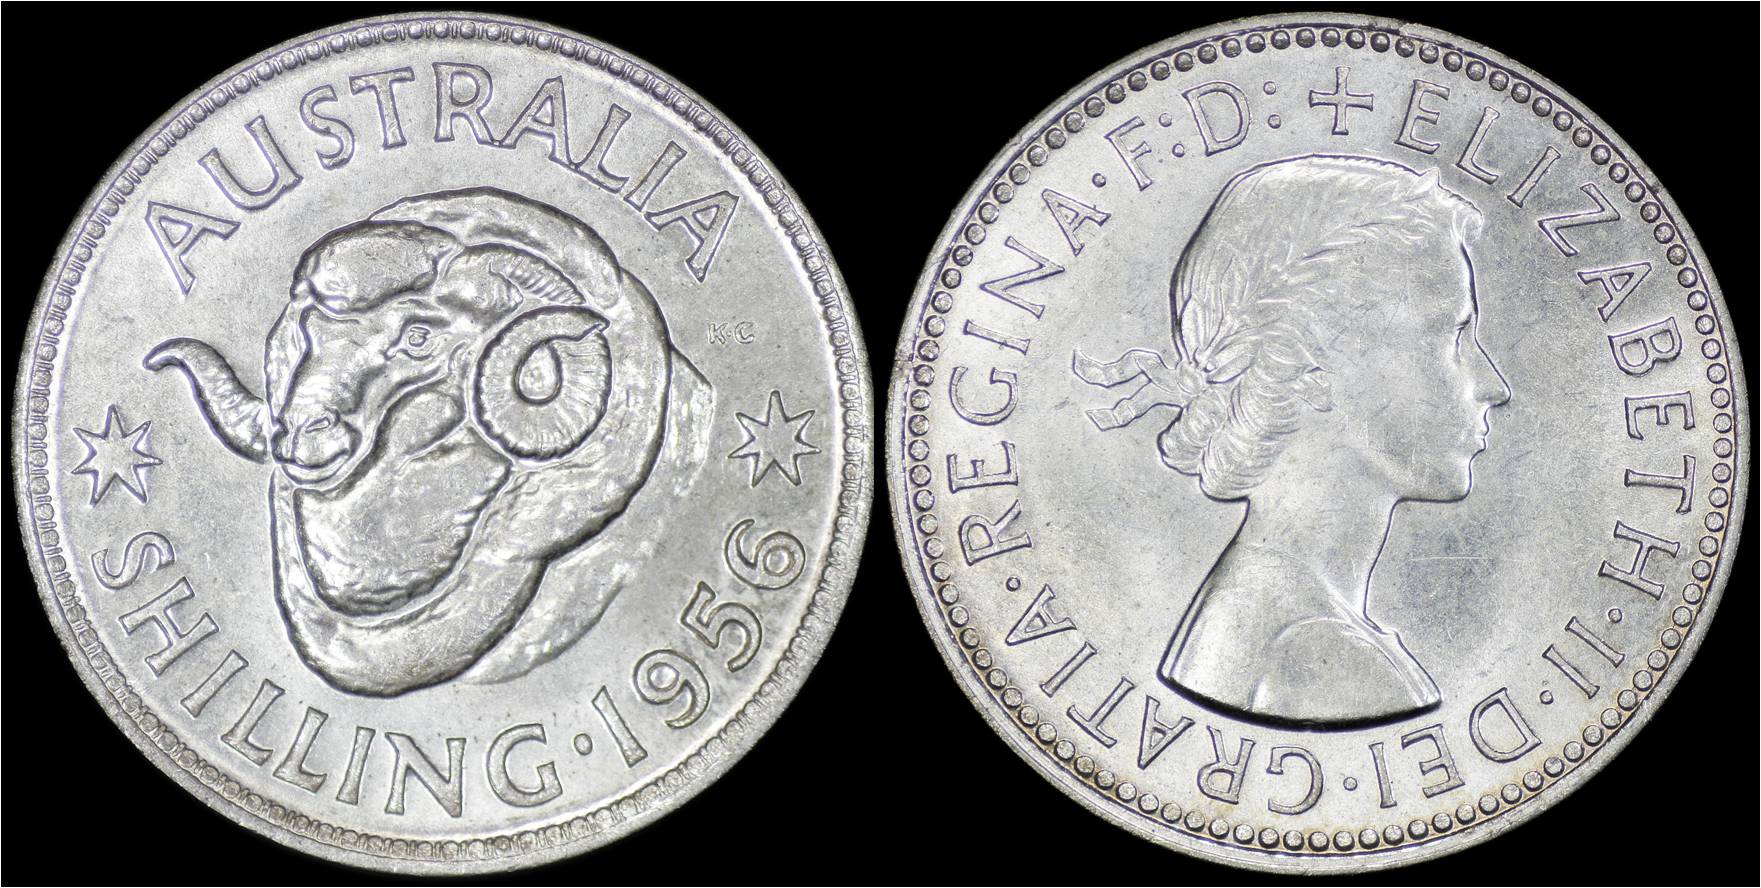 KM 59 Australia 1956 (m) 1 Shilling.jpg